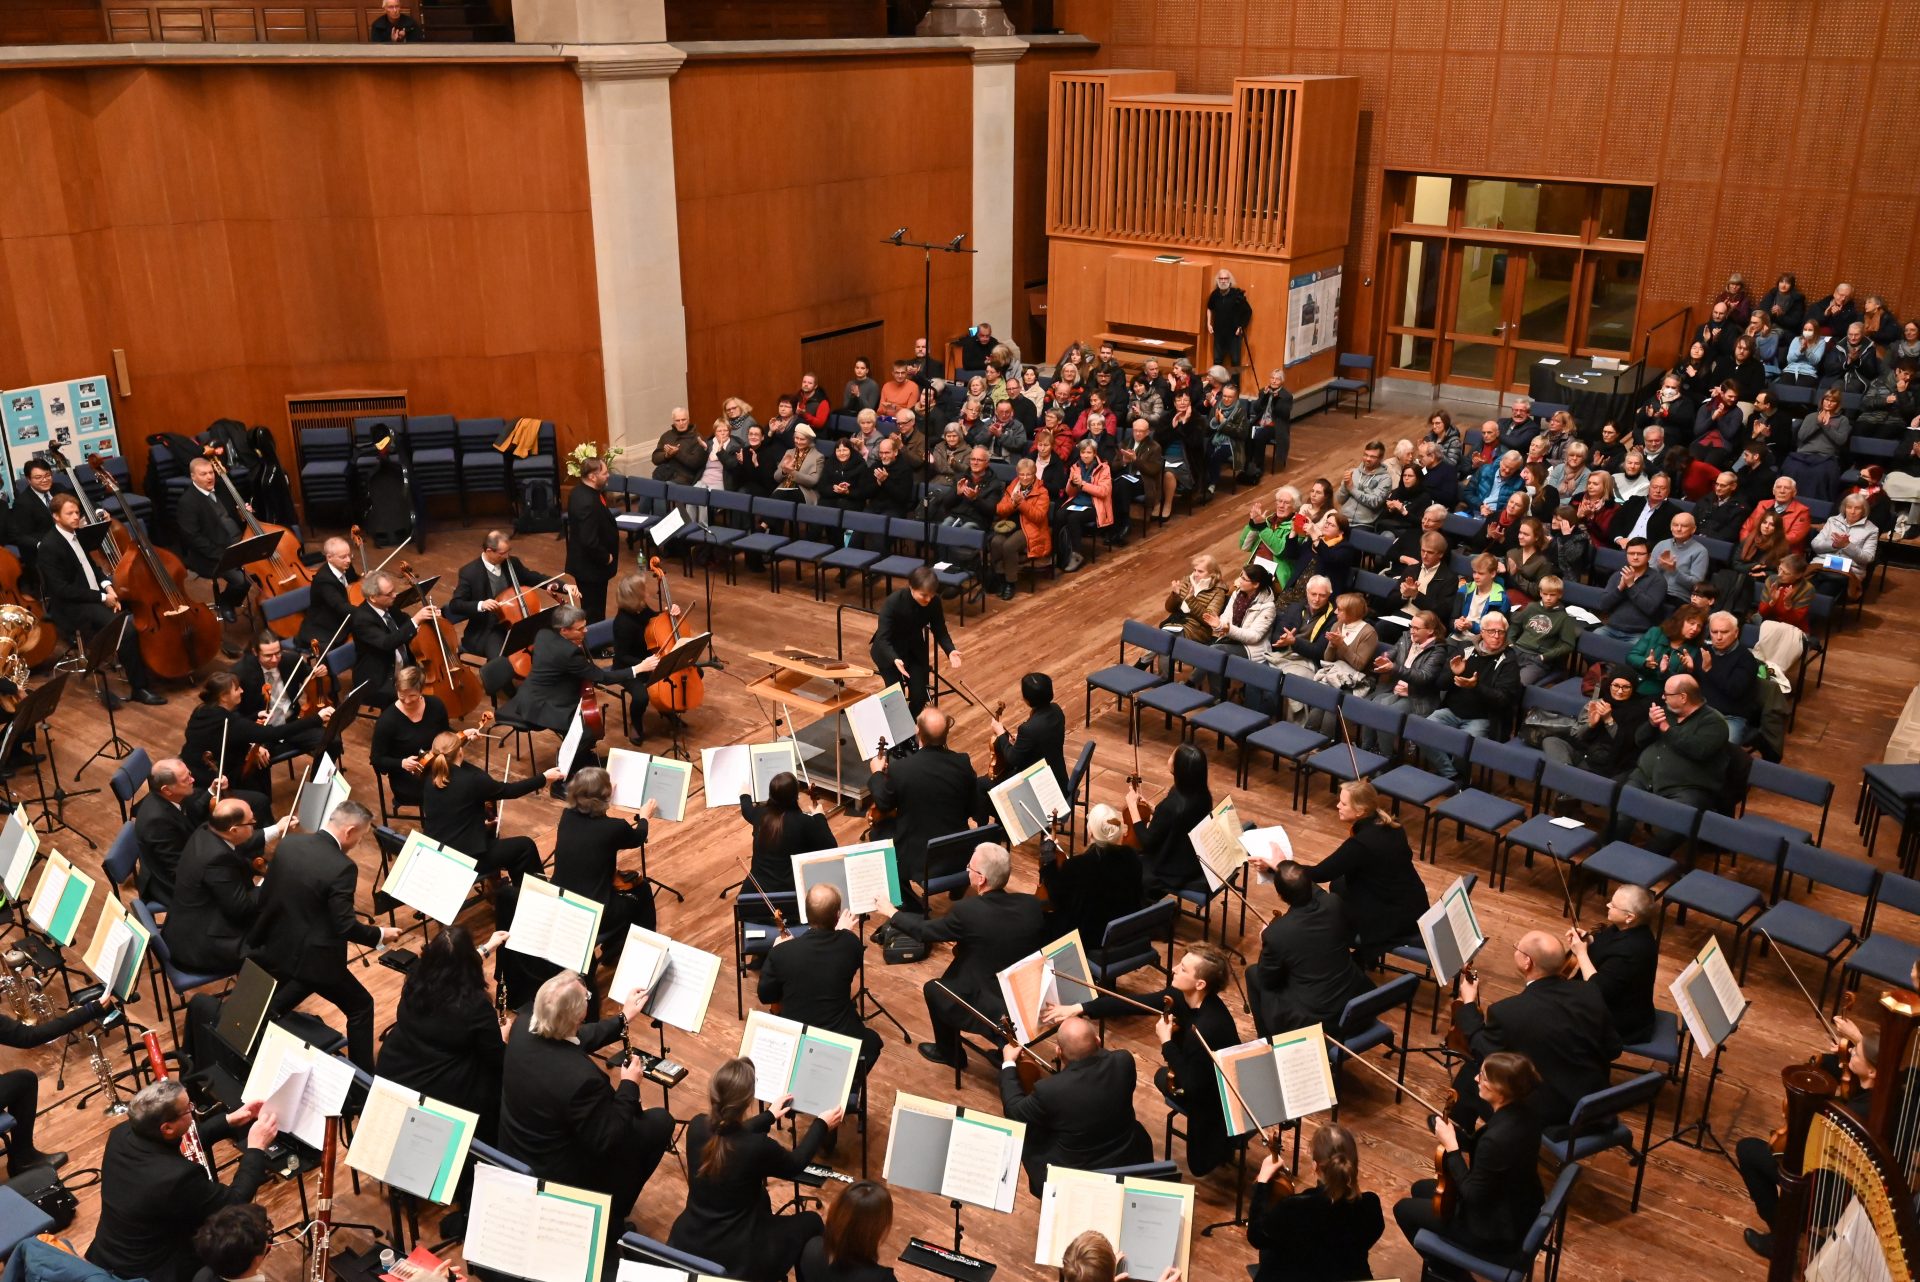 Zukunftsmusik: Singakademie Dresden hat KI-Komposition uraufgeführt